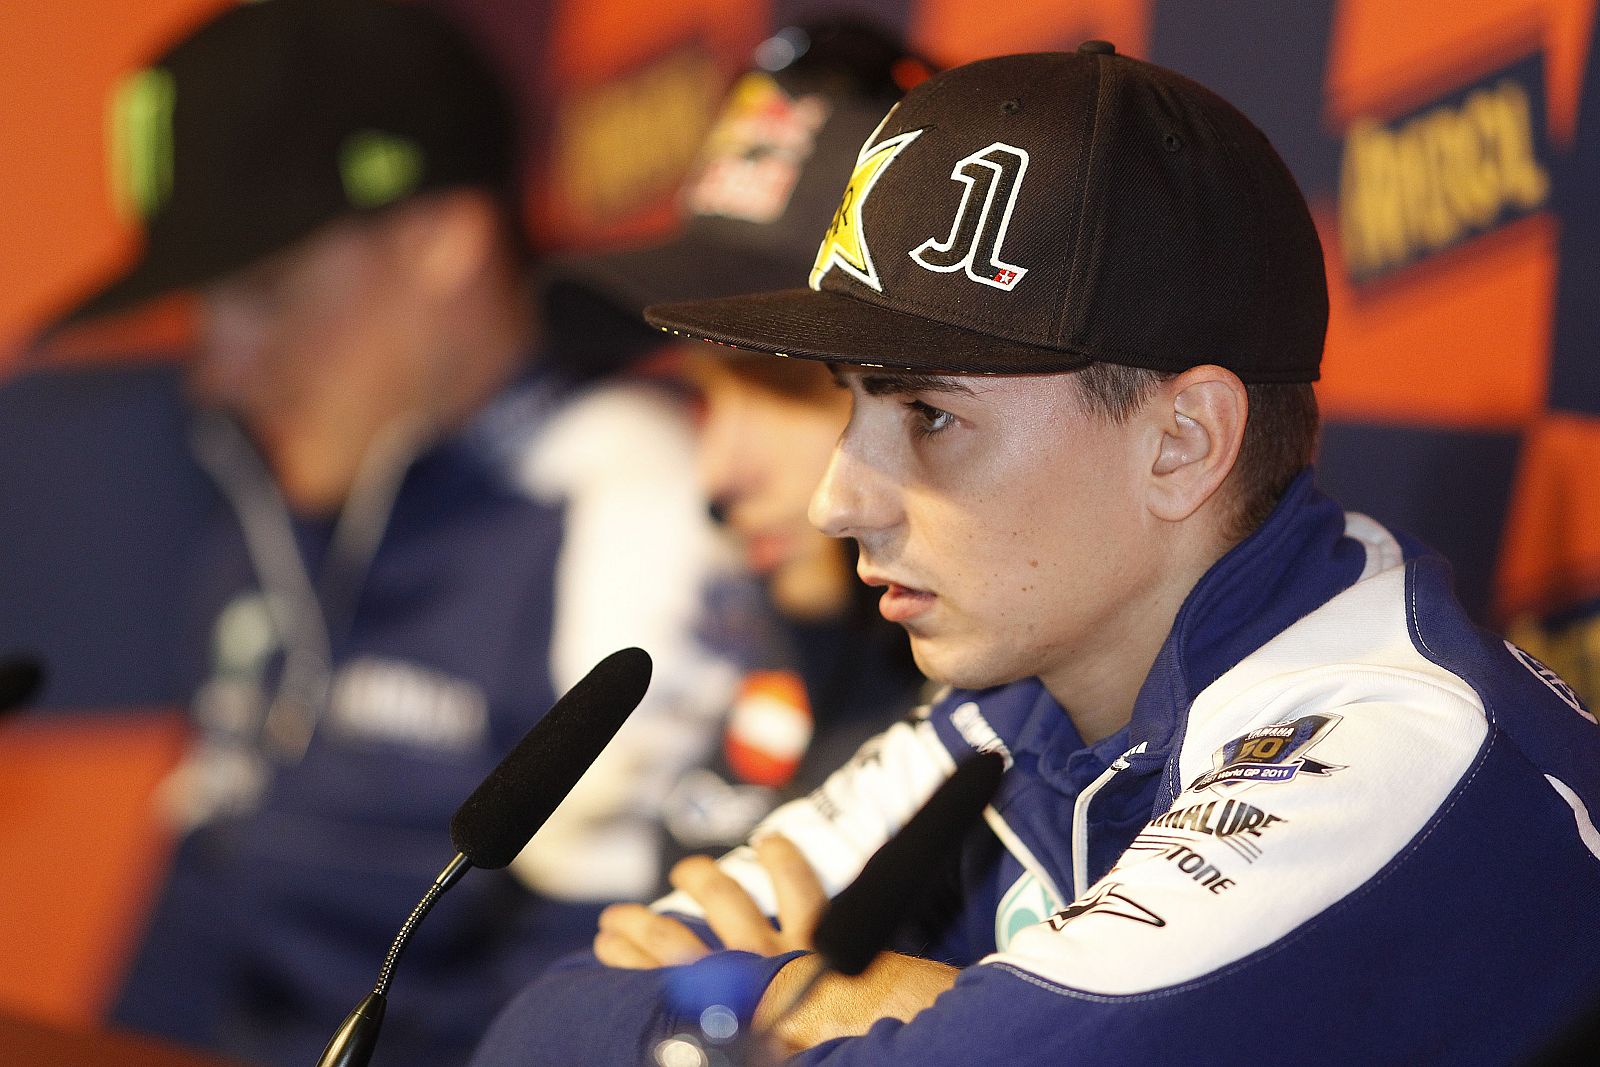 Lorenzo durante la rueda de prensa del GP de Catalunya.